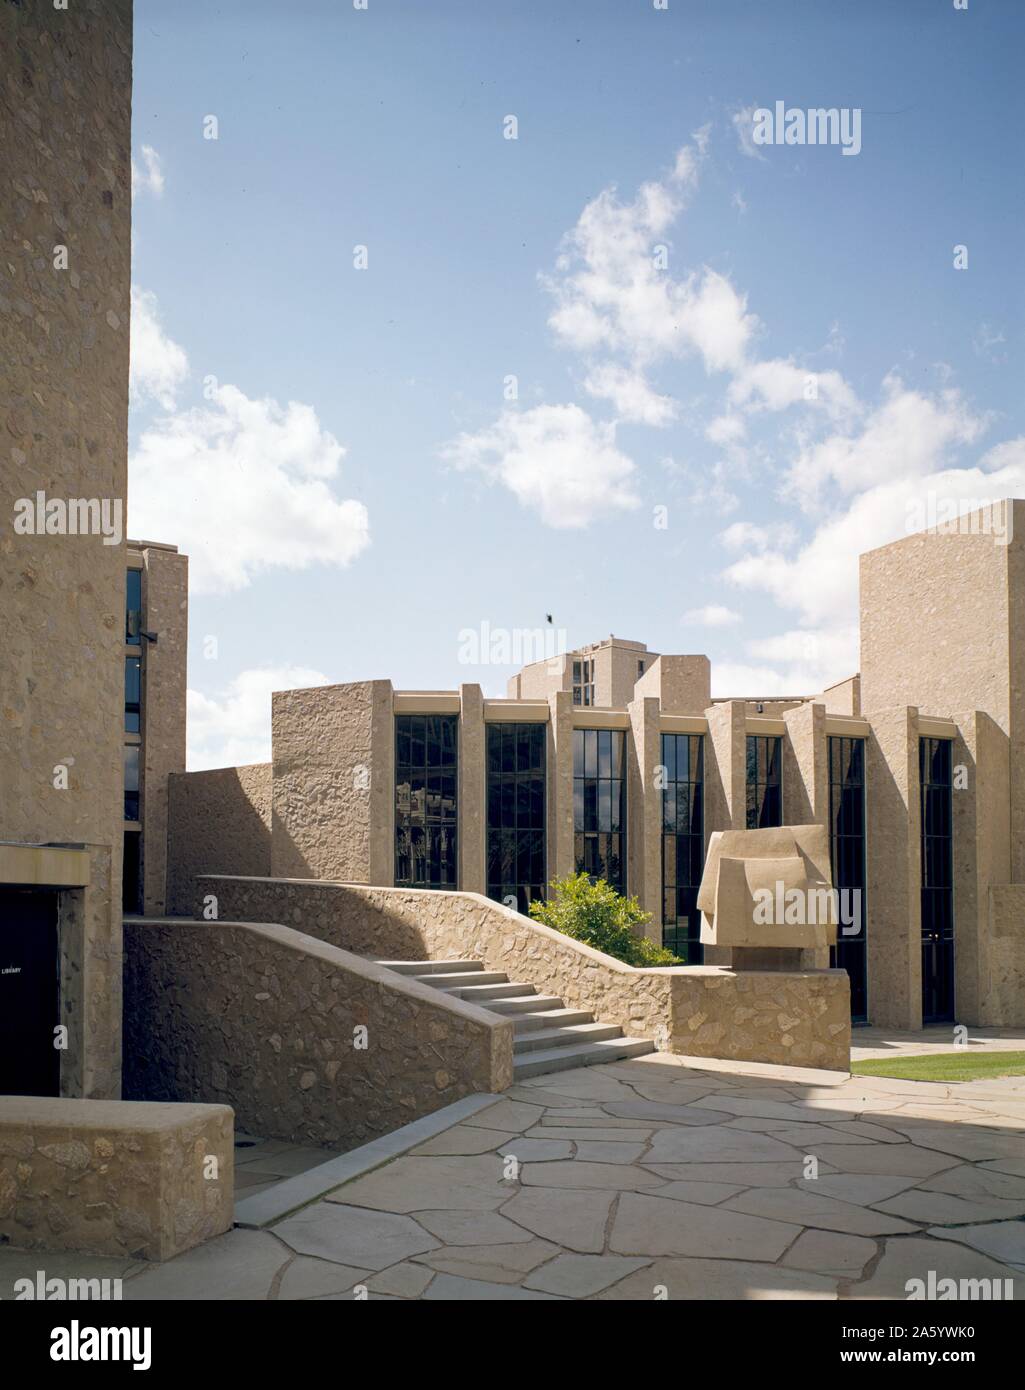 L'université de Yale, Samuel F.B. Morse et Ezra Stiles Collèges, New Haven, Connecticut, 1958-1962. Exterior conçu par l'architecte Eero Saarinen, Nouvelle Zélande 1990-1994 Banque D'Images